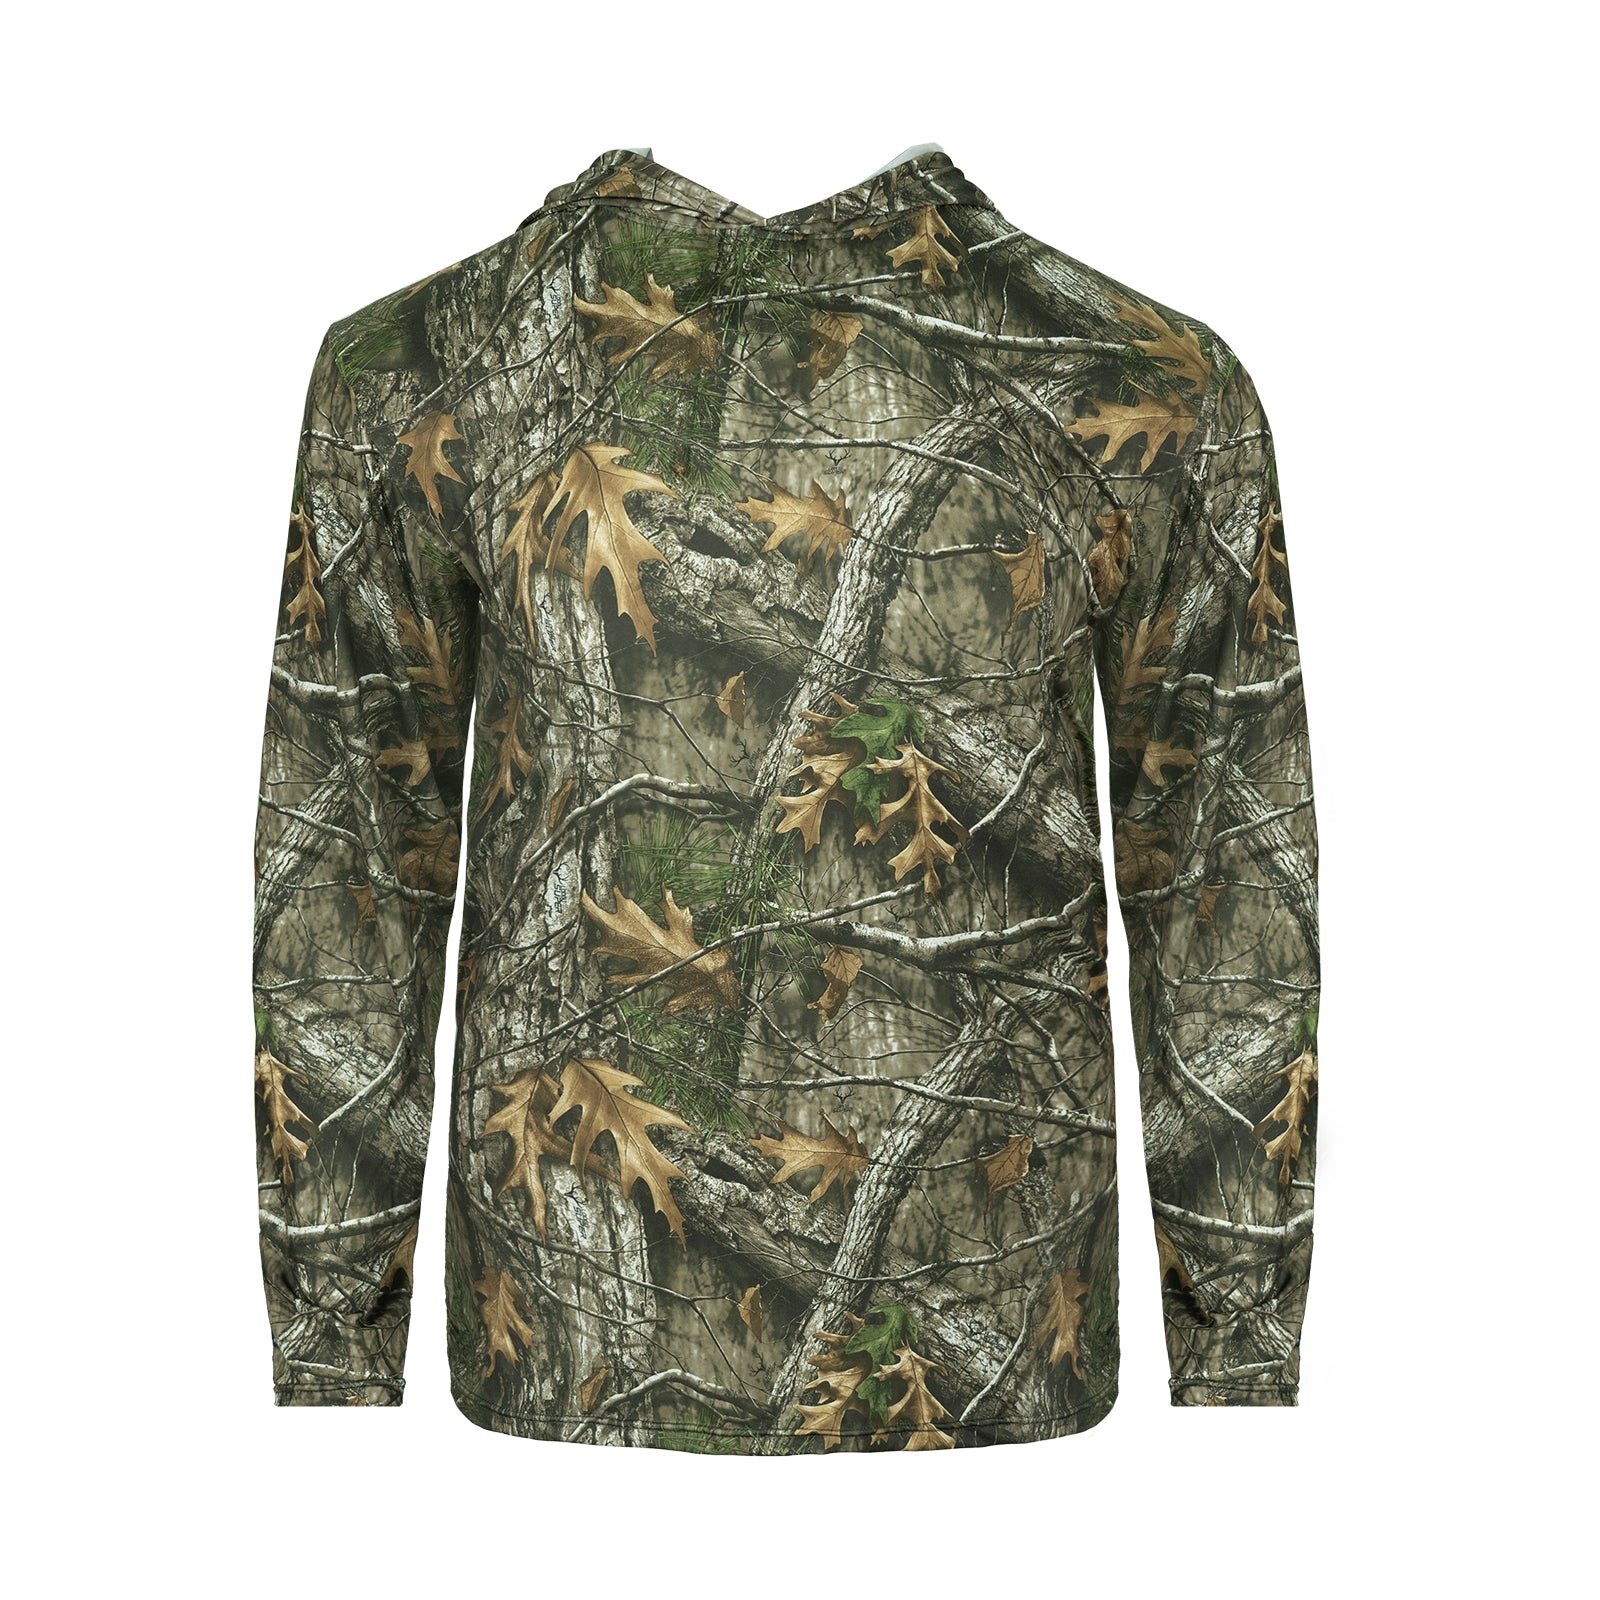 LOOGU Men's Hunting Camo Shirt Lightweight, Camouflage Shirts for Men Long  Sleeve Shirt for Fishing Hiking Camping